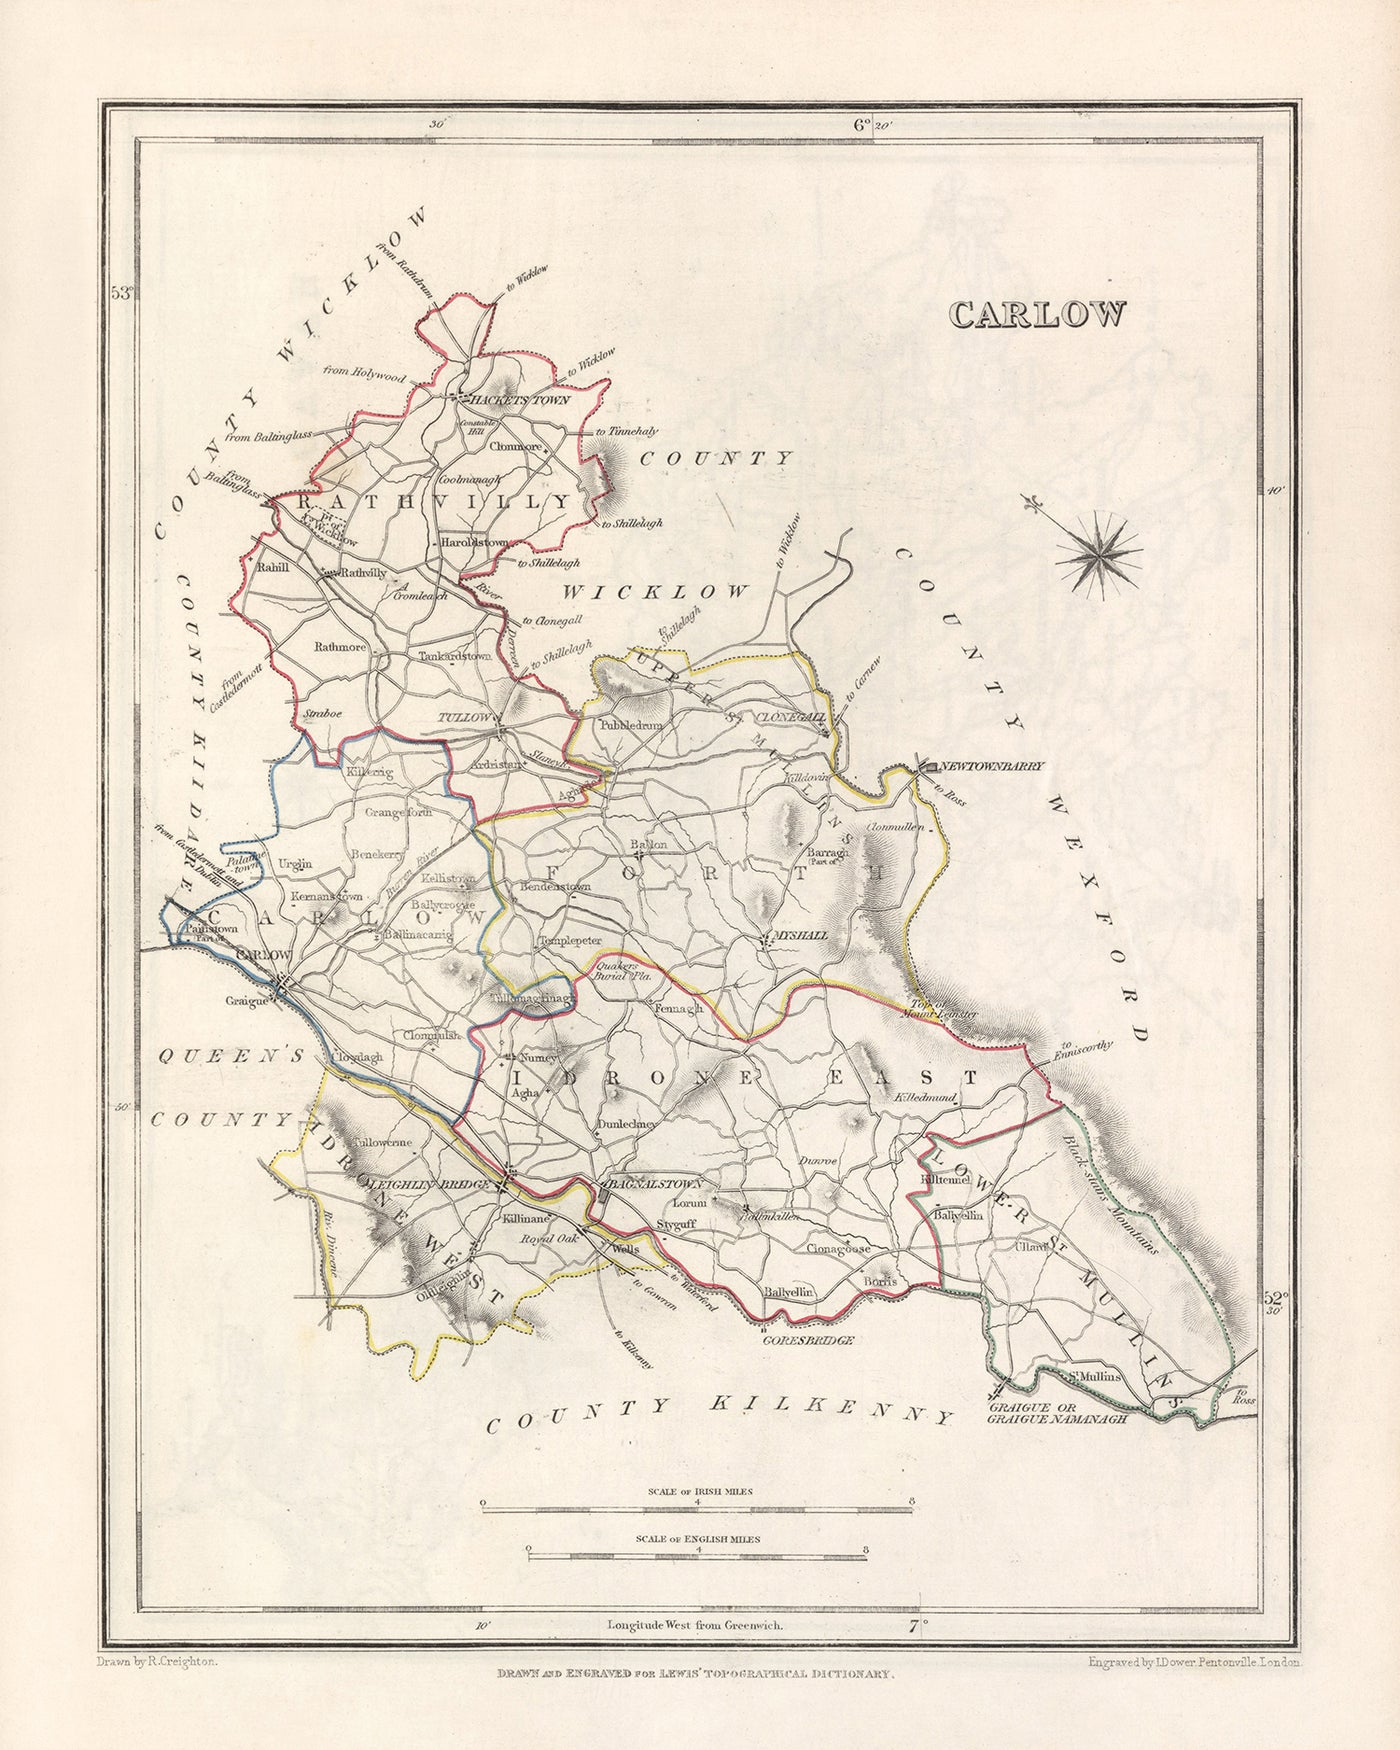 Ancienne carte du comté de Carlow par Samuel Lewis, 1844 : Tullow, Hacketstown, Leighlinbridge, Rathvilly, Myshall